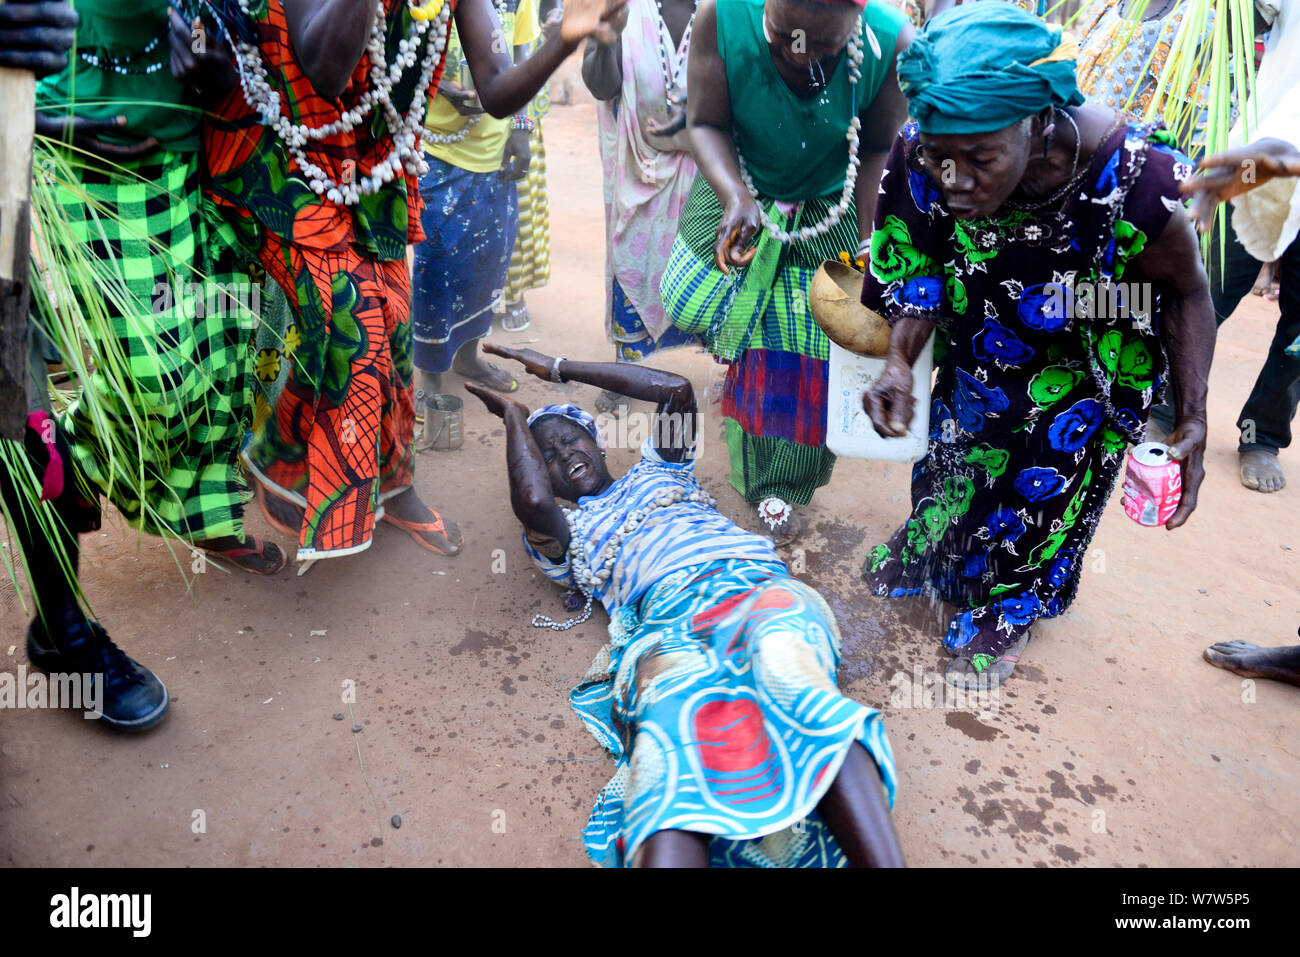 Auf dem Boden liegende Frau mit Wasser während der Nalu rituellen Zeremonie sprengte, Cabedu Dorf, Guinea-Bissau, Dezember 2013. Stockfoto